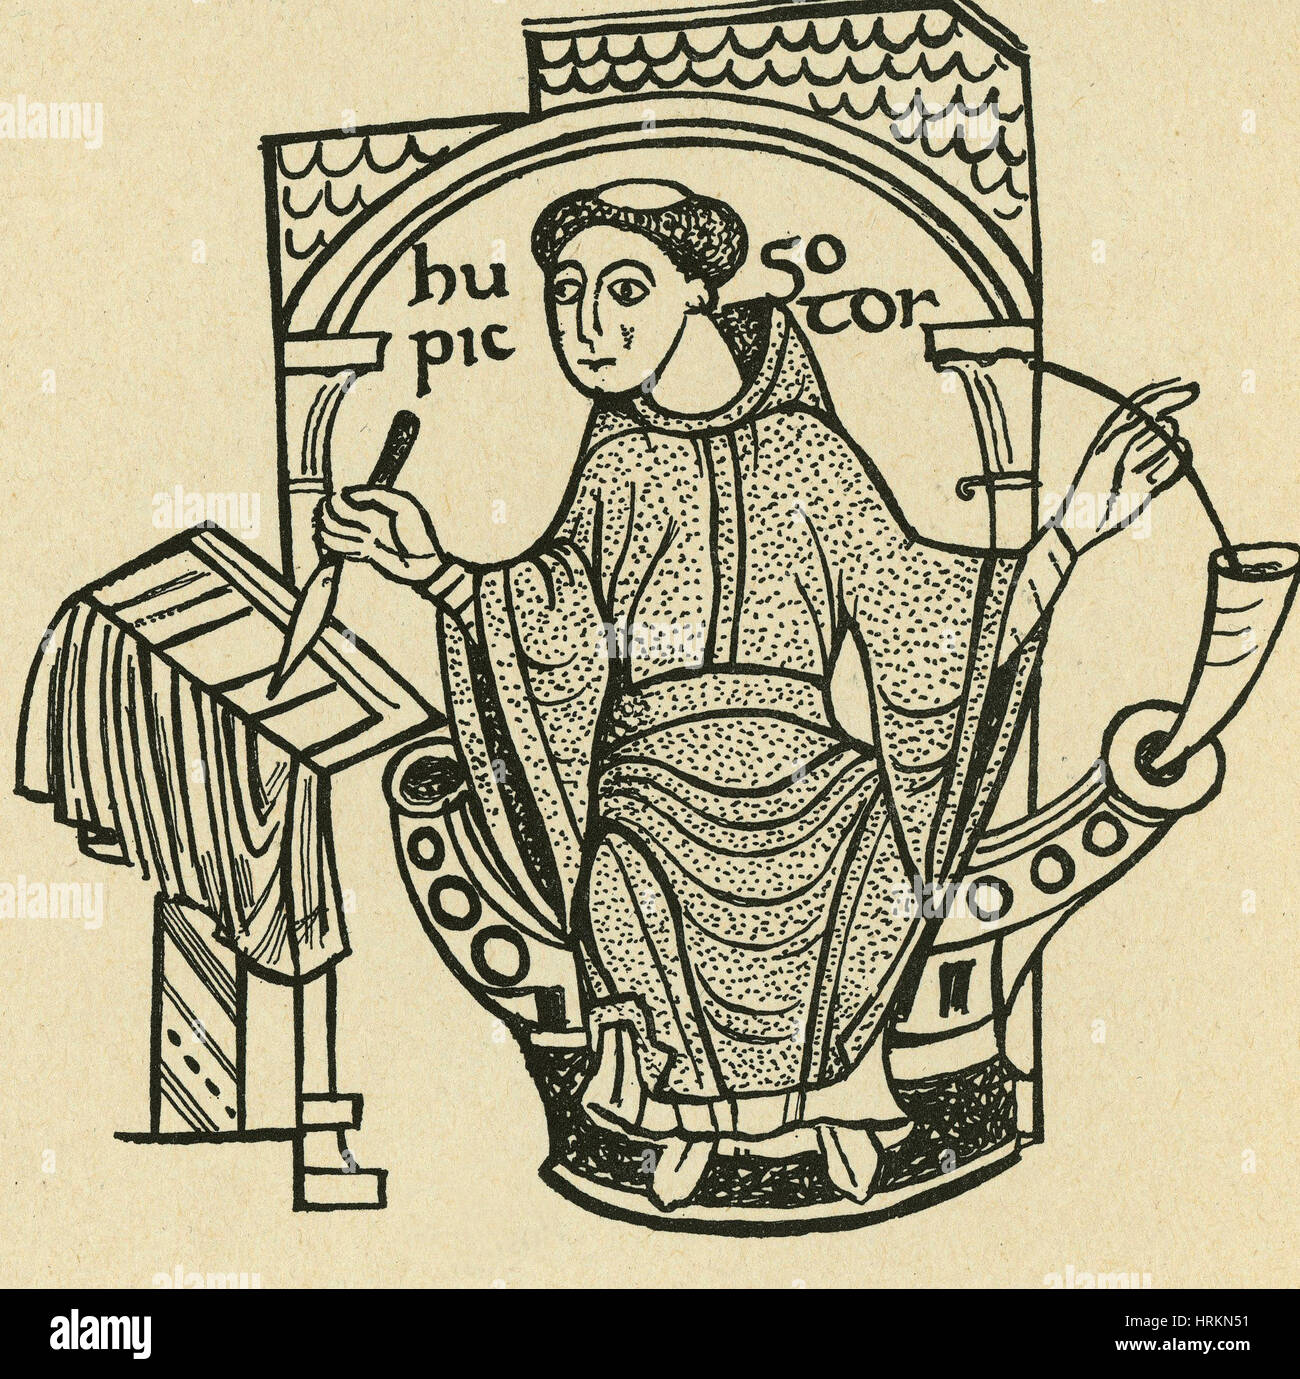 Monje y escribano medieval, del siglo XI. Foto de stock